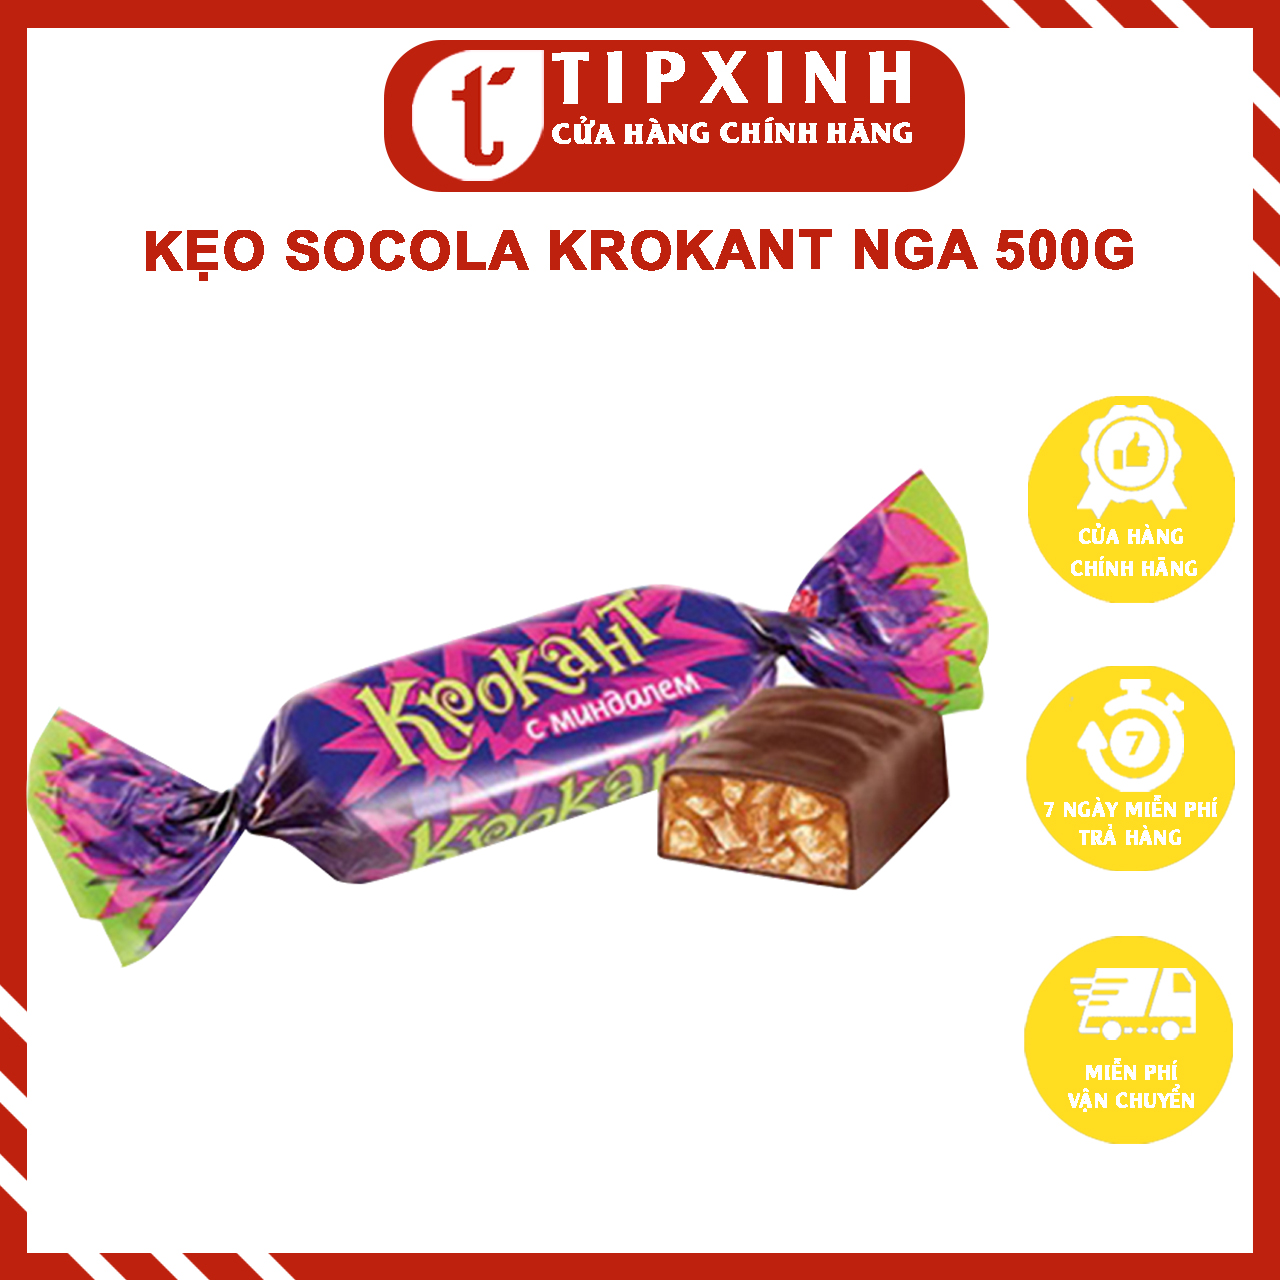 Kẹo socola hạnh nhân nghiền tím Krokant 500g nhập Nga chính hãng cao cấp - Tipxinh cosmetics